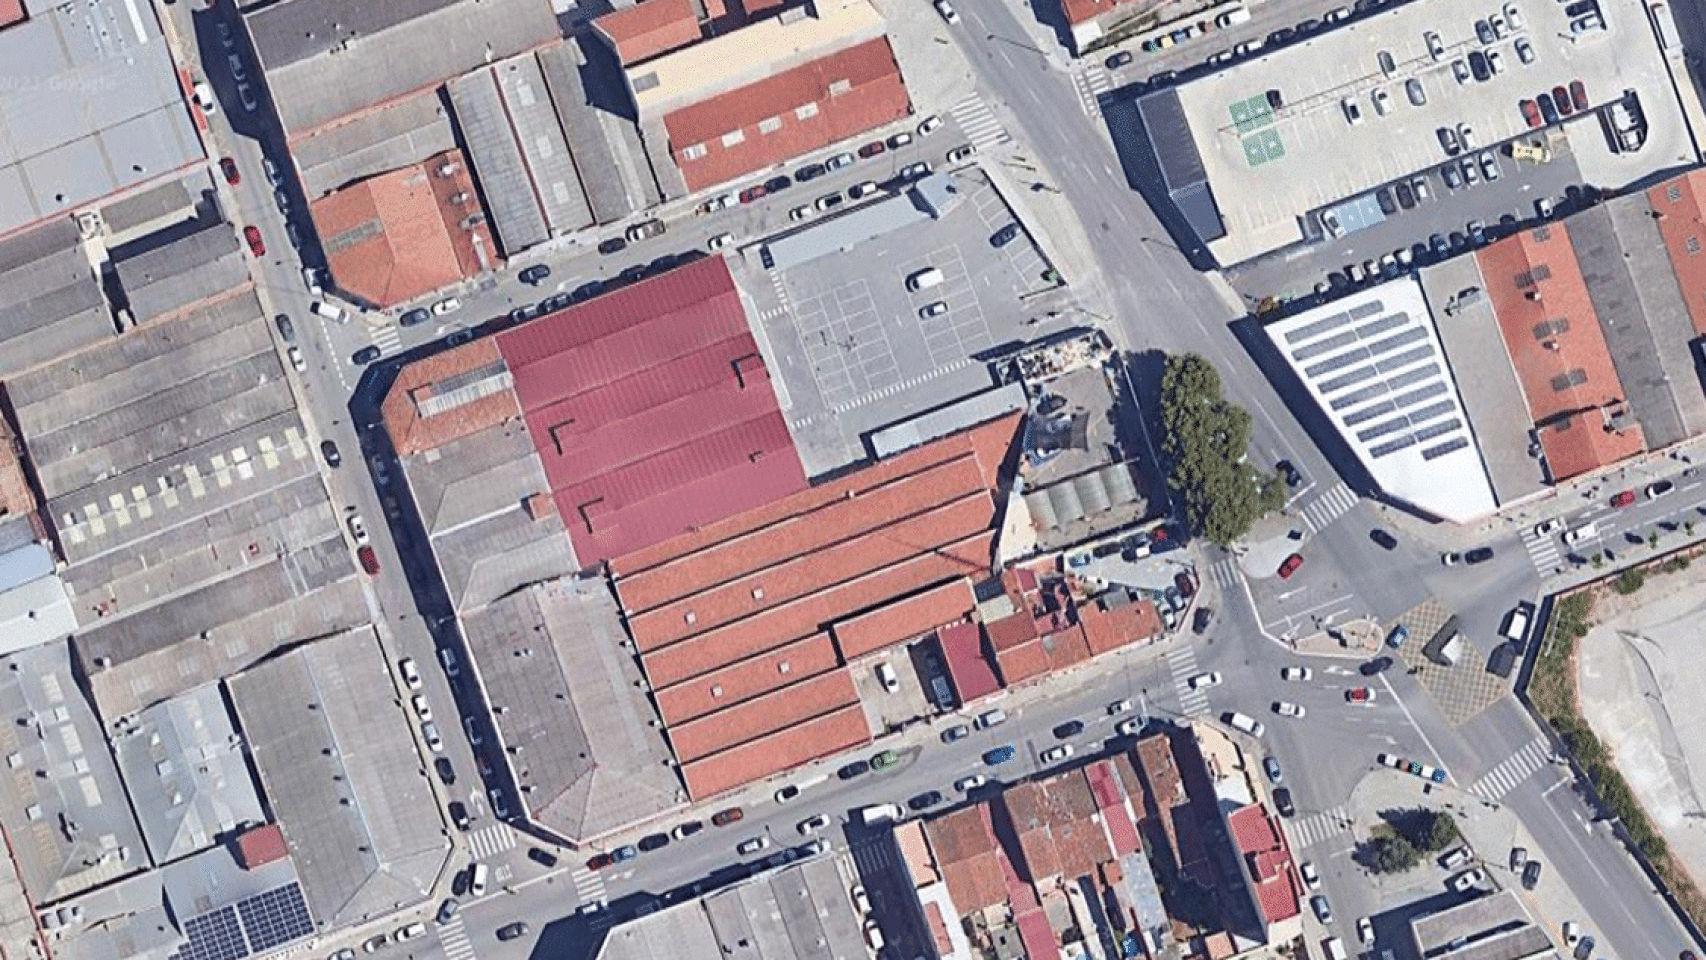 El recinto de Sabadell en el que ha ocurrido el accidente laboral por el cual un trabajador ha resultado herido grave / GOOGLE STREET VIEW